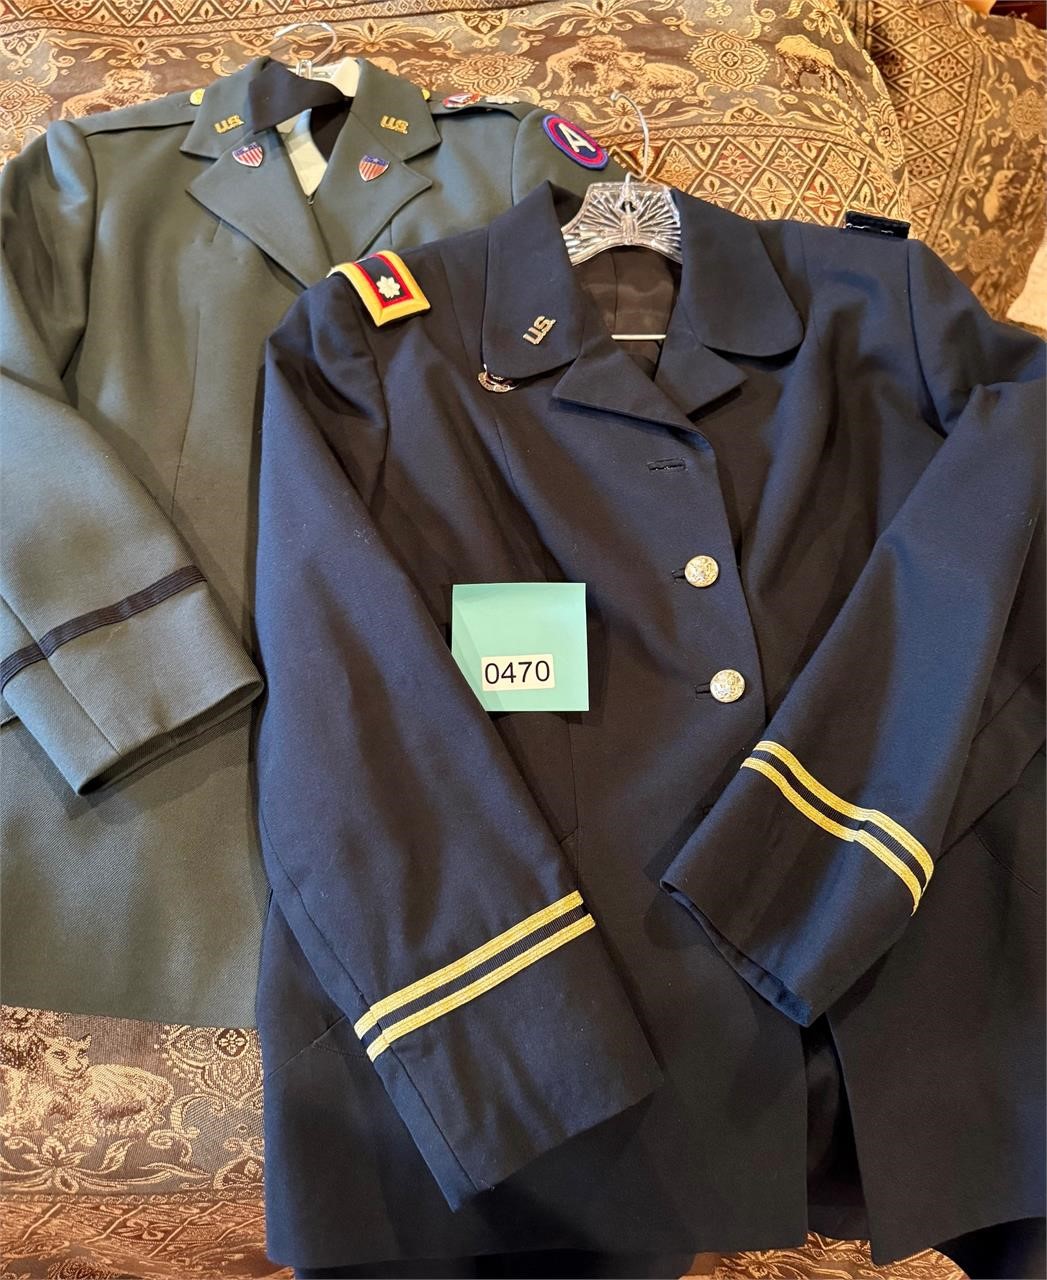 U.S. Army Women's Dress Uniform